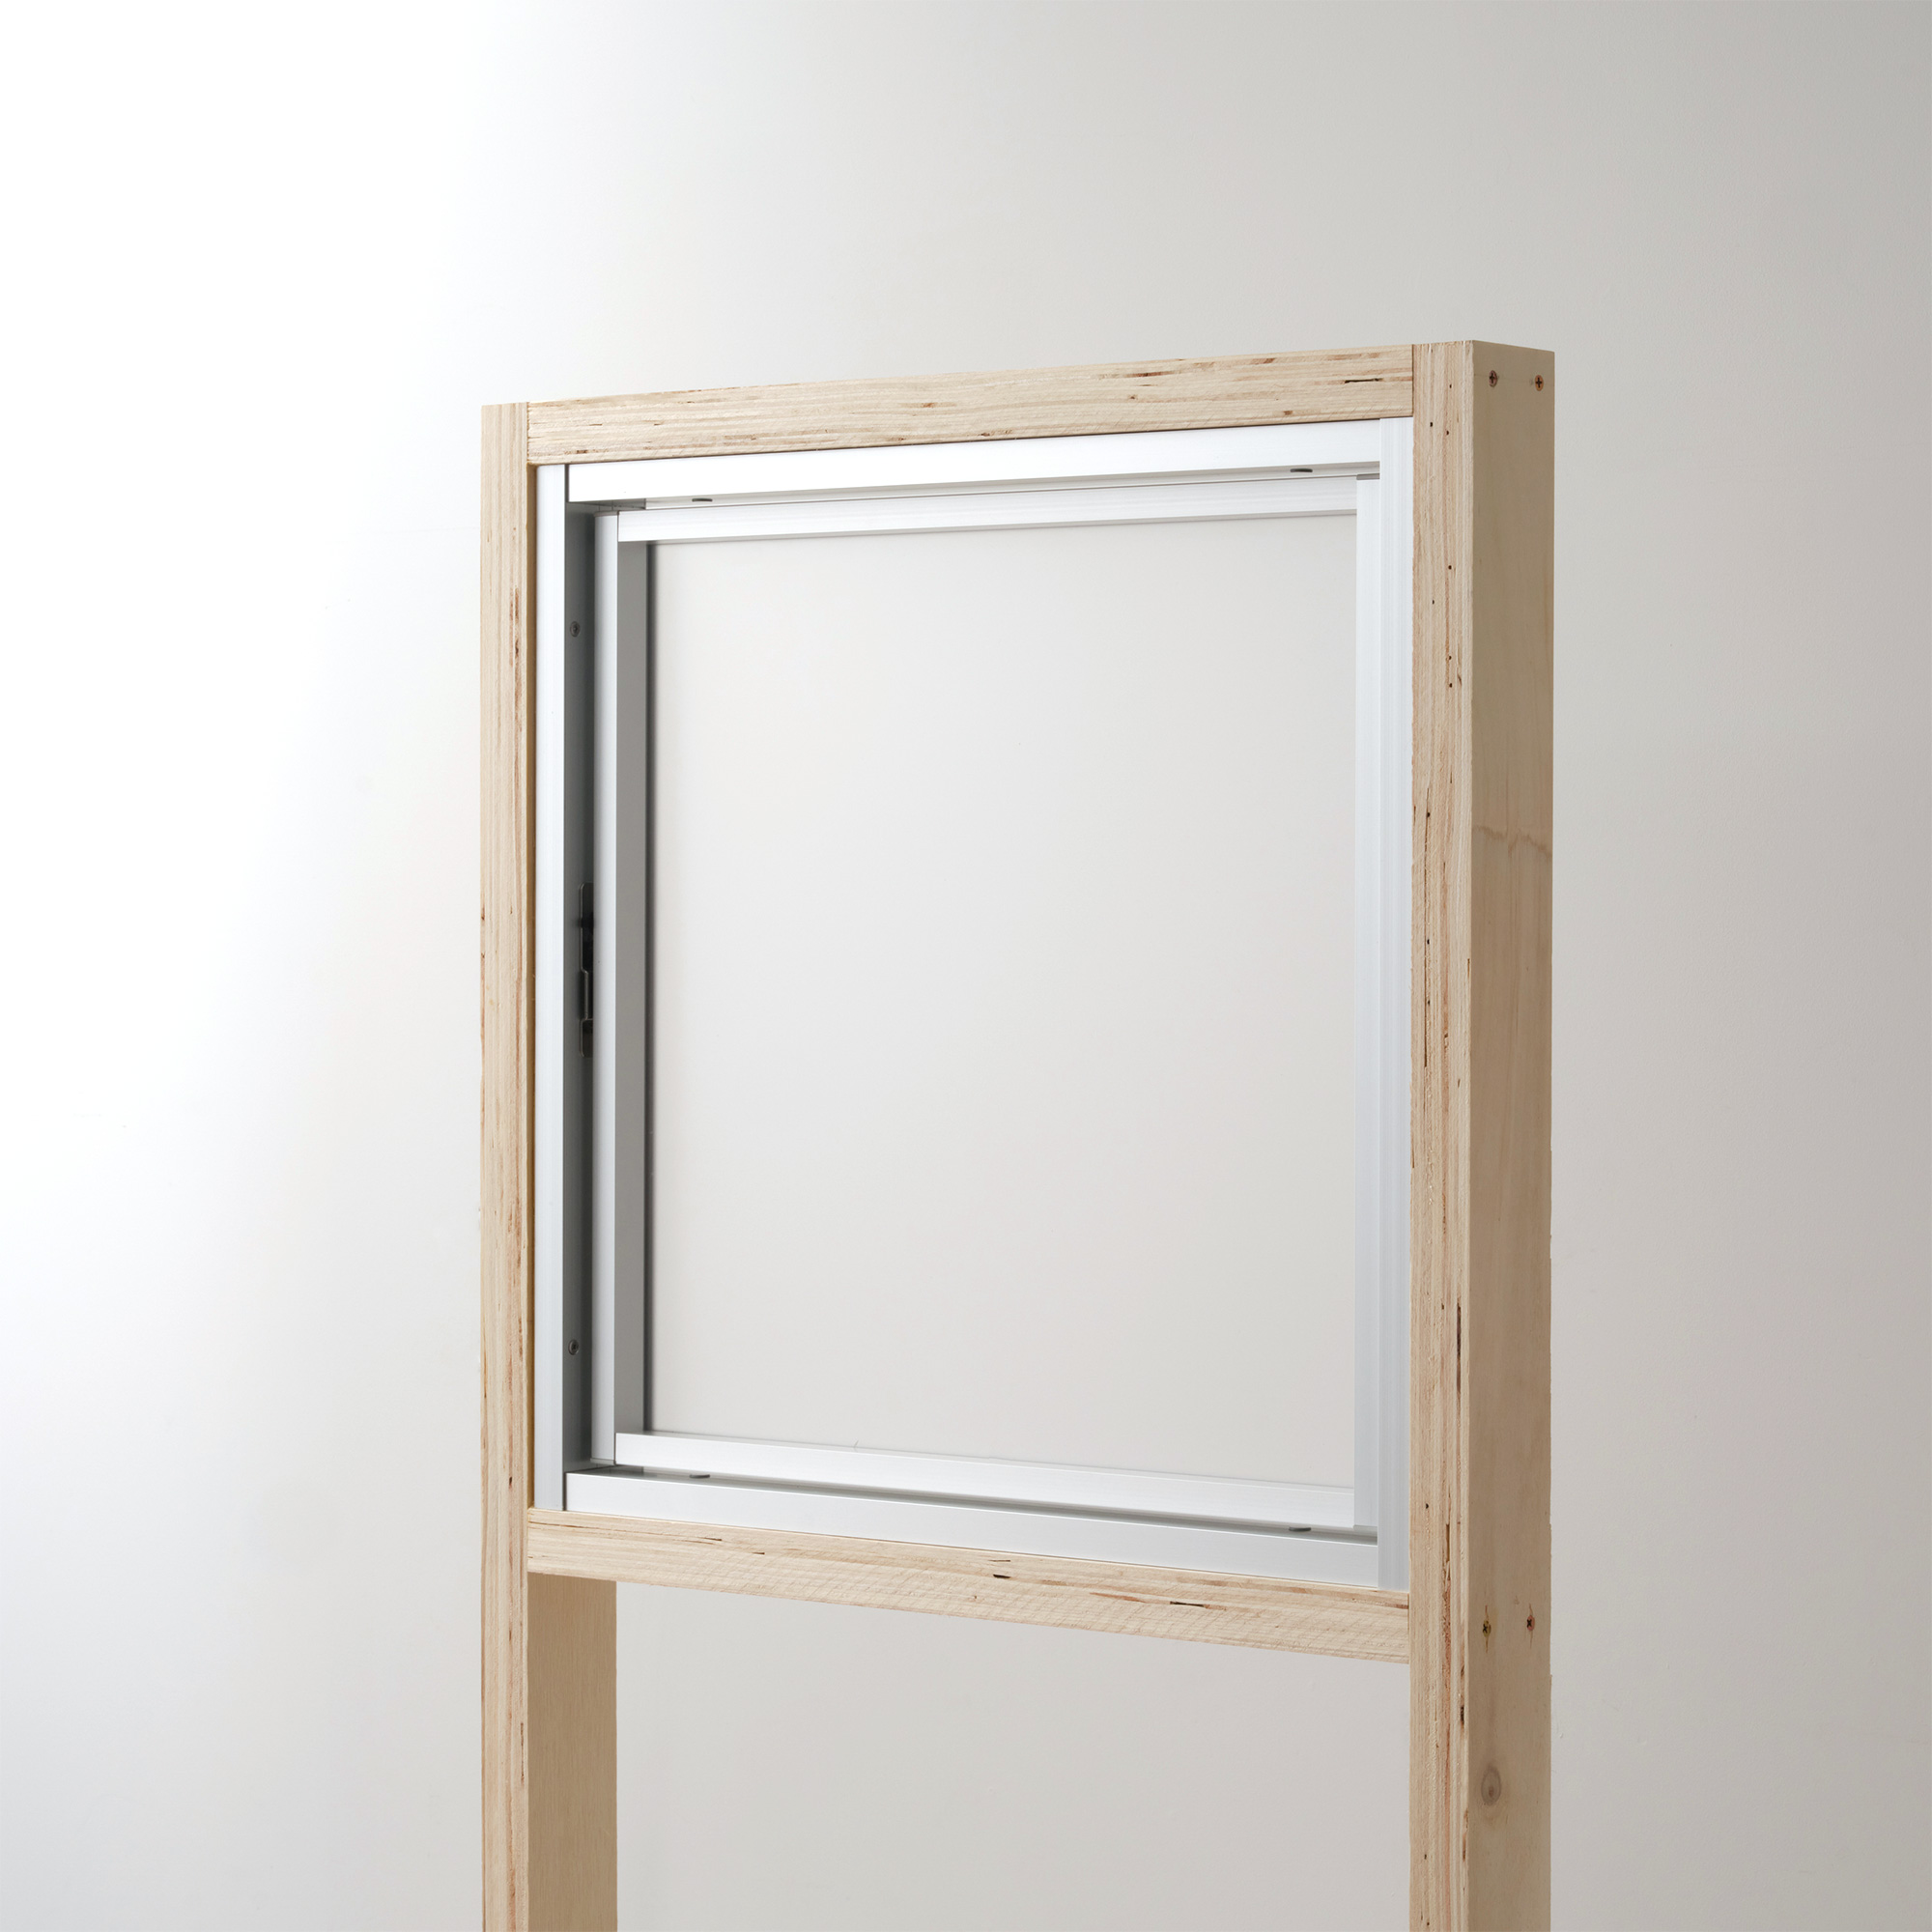 室内アルミサッシ FIX窓 シルバー 樹脂パネル DW-DR013-04-G201 回転窓 W500 H500 マット樹脂パネル